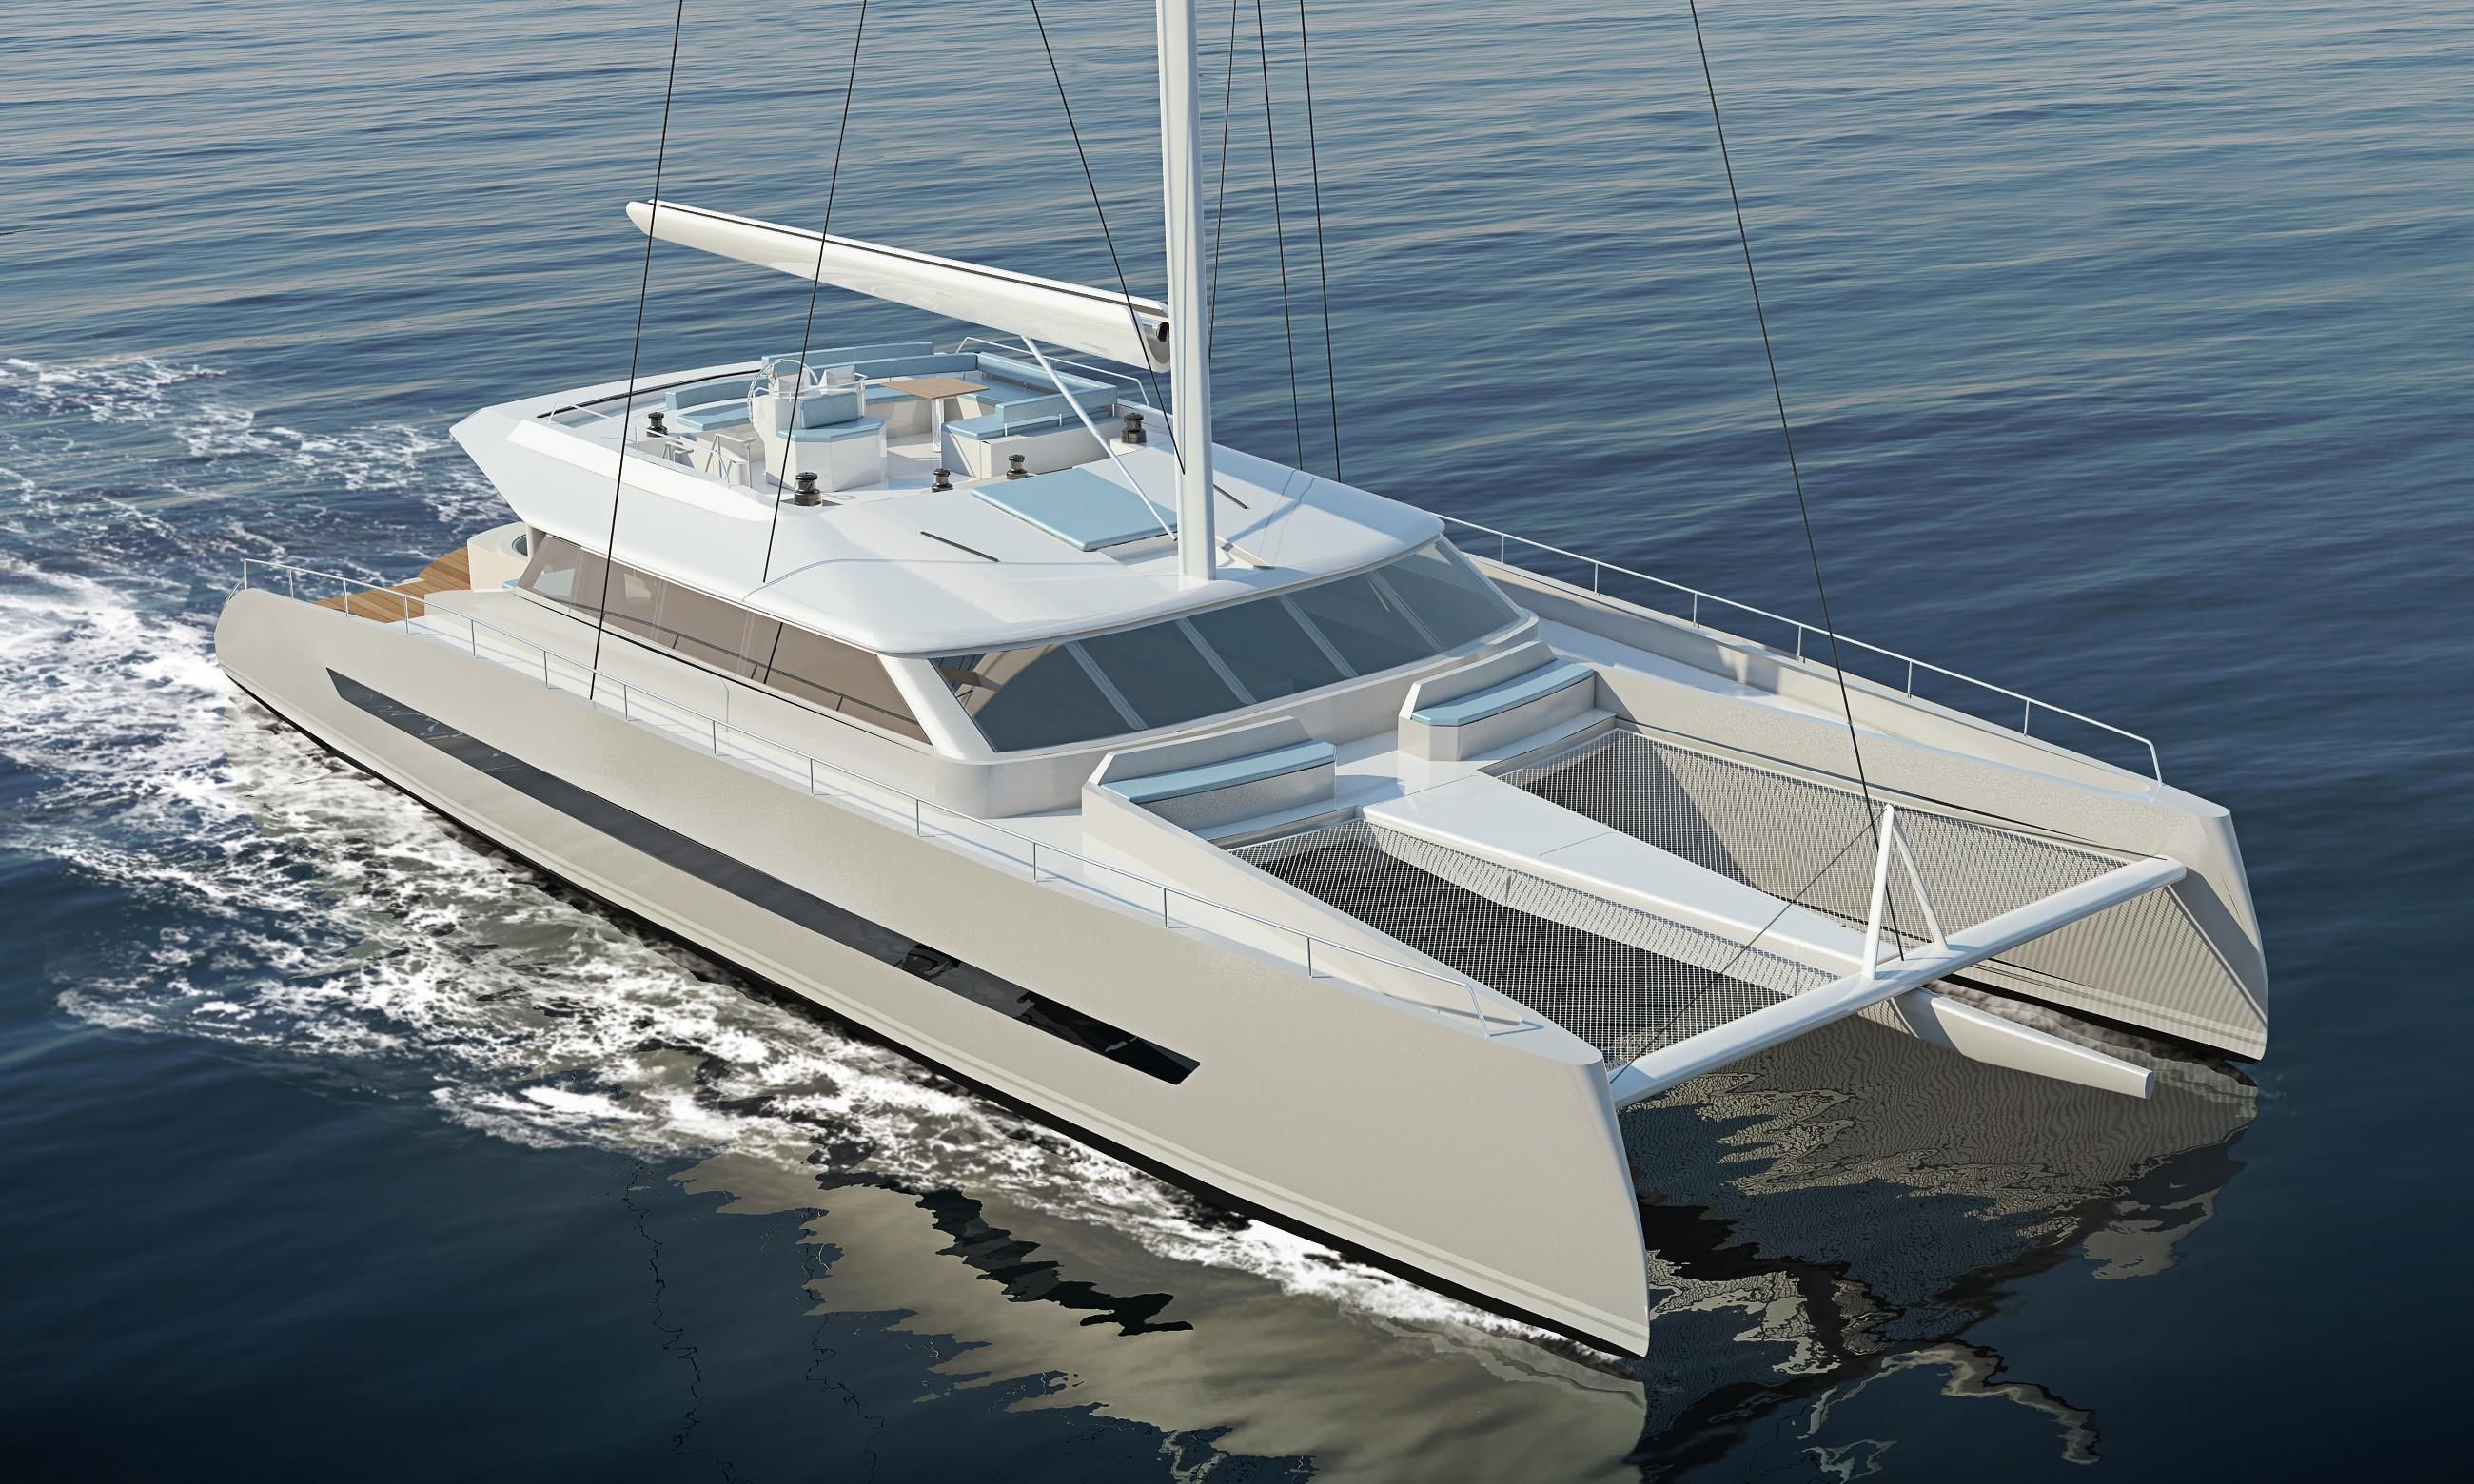 2020 Balance 760 F Catamaran for sale - YachtWorld